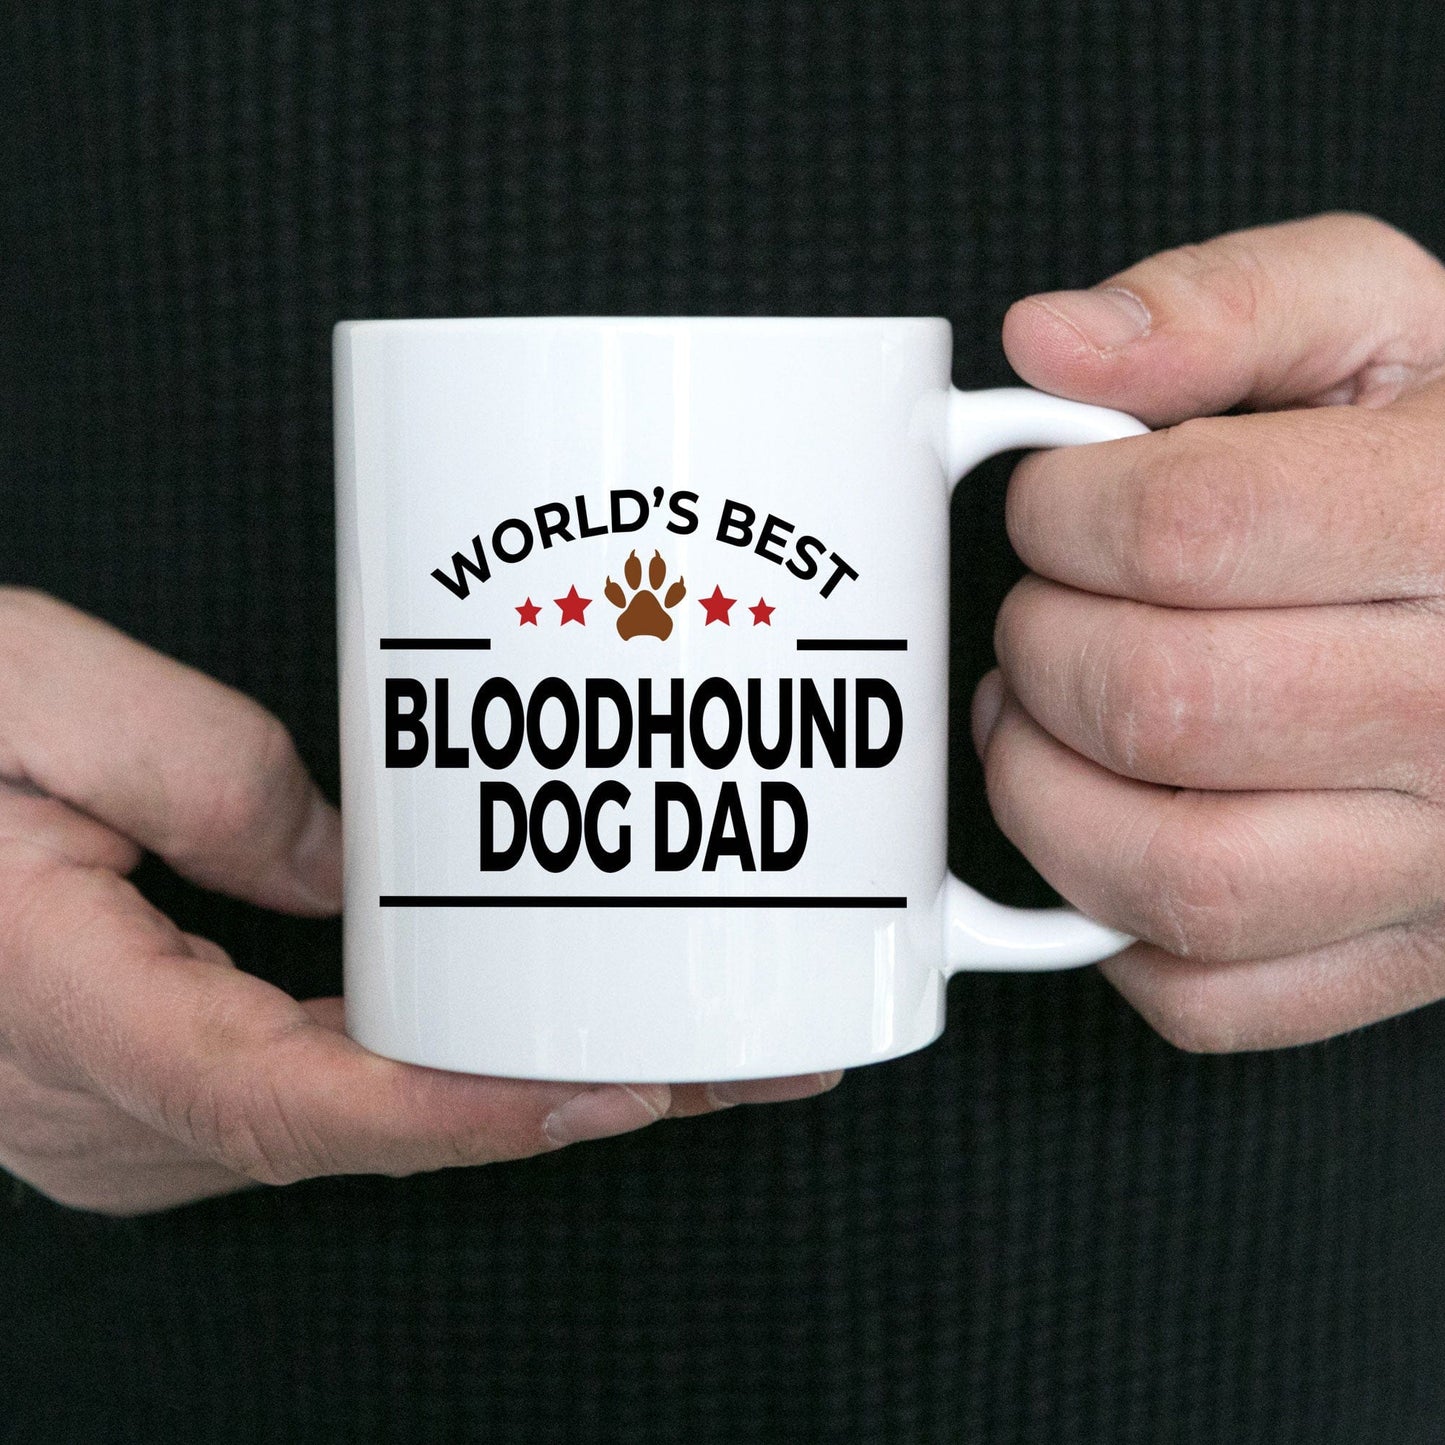 Bloodhound Dog Dad Coffee Mug